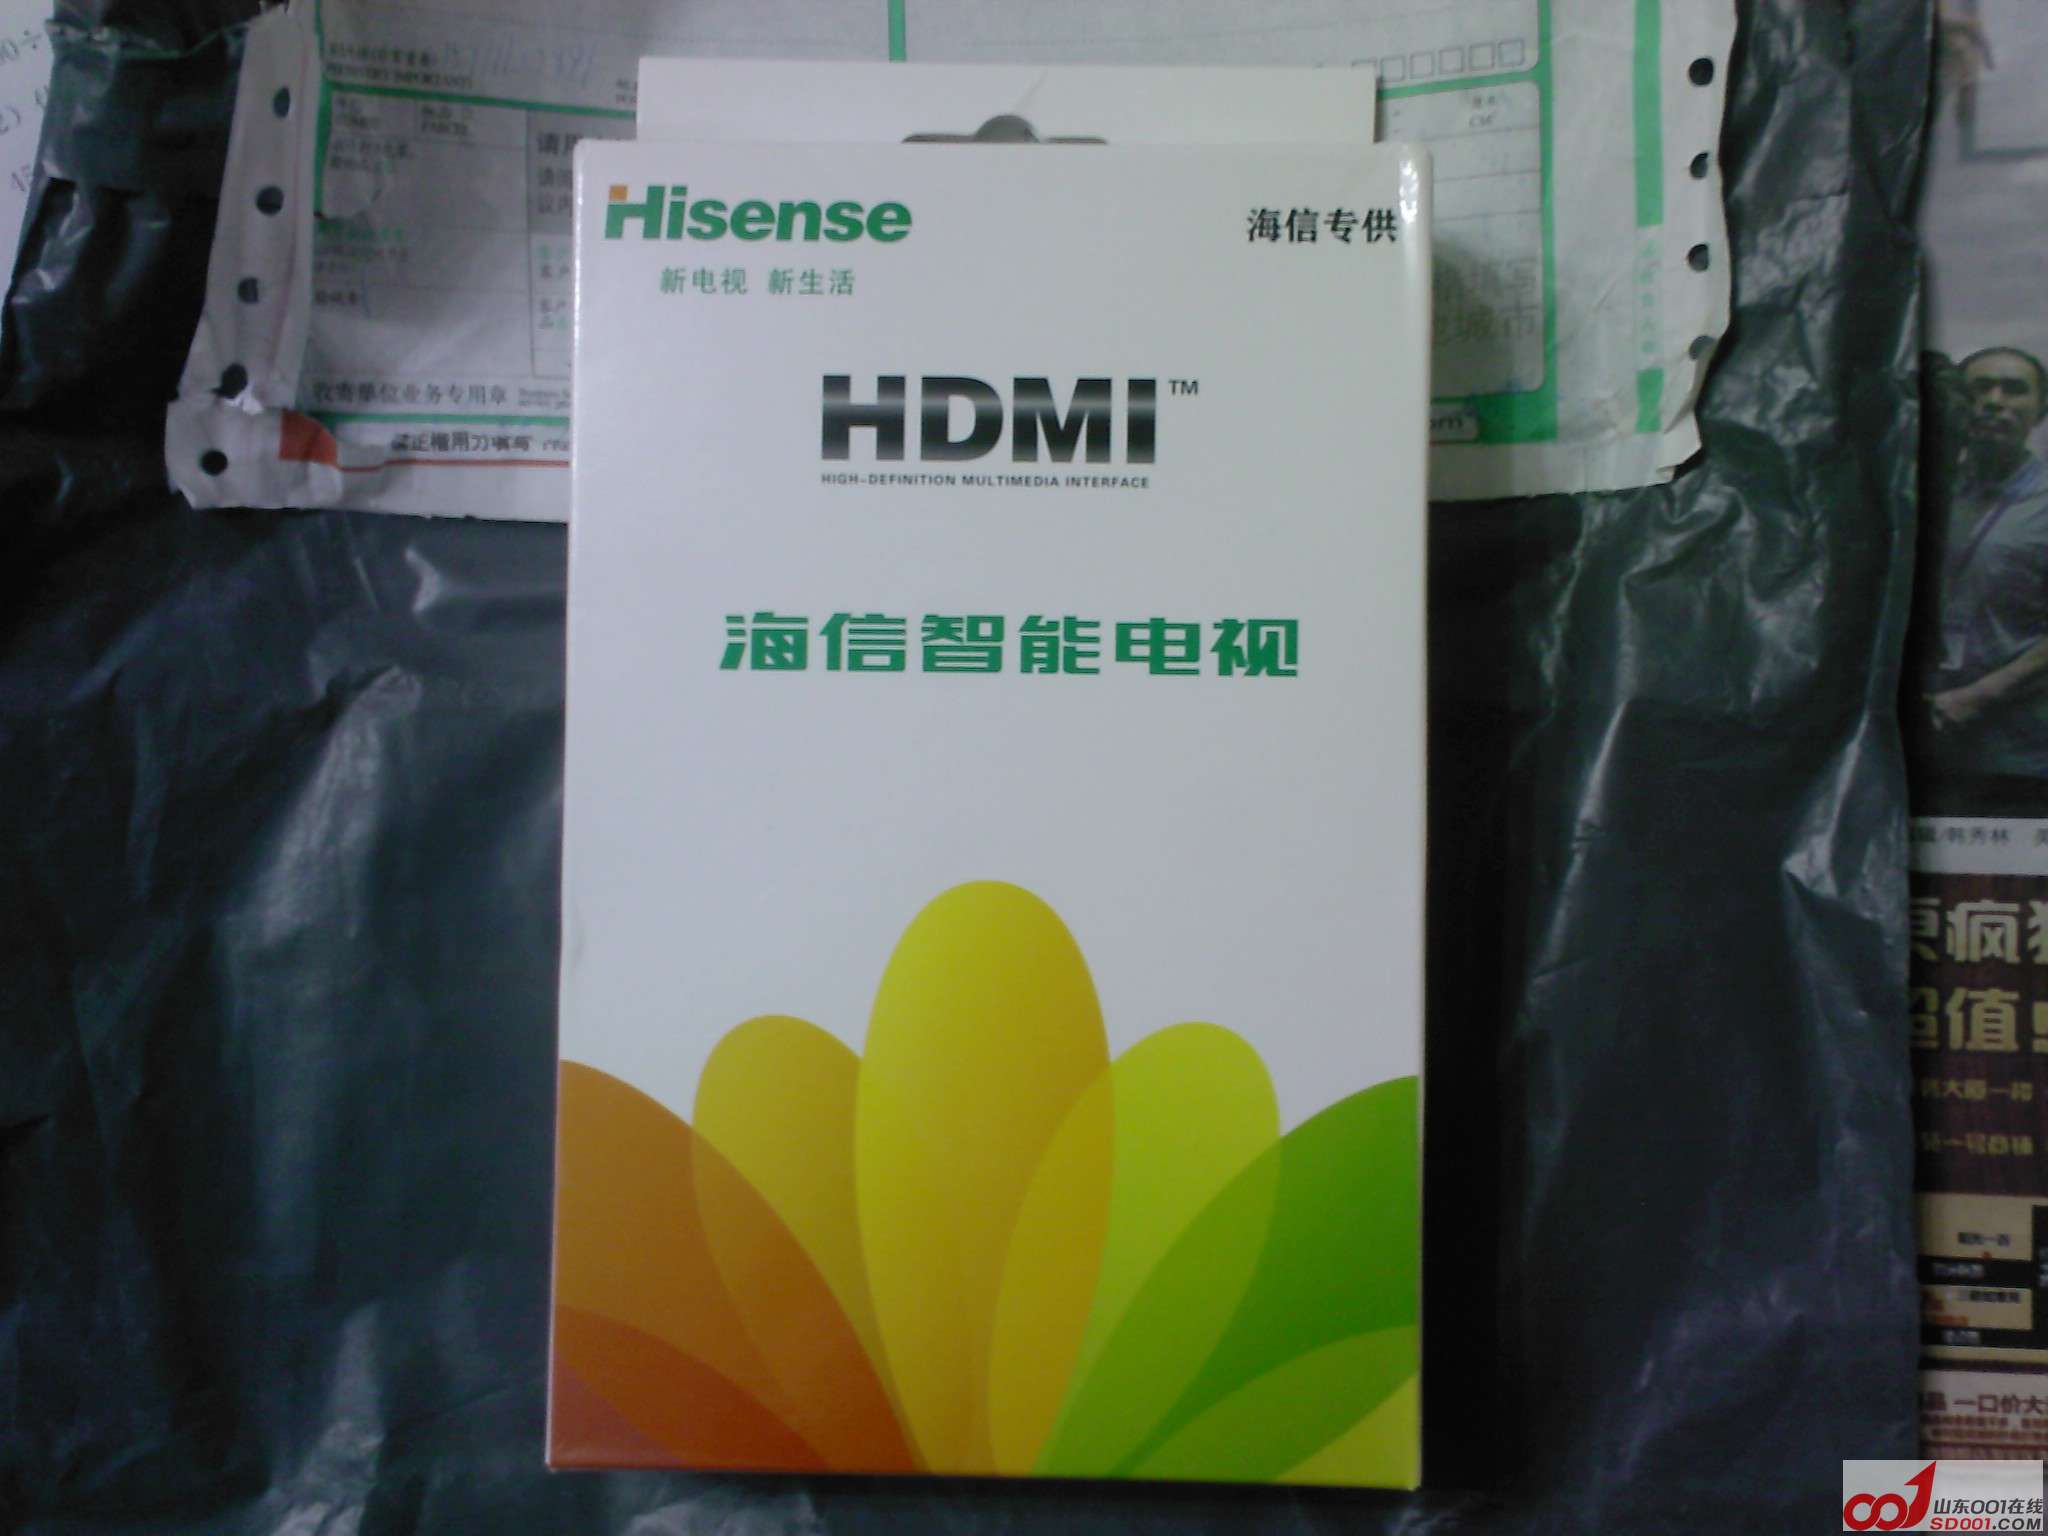 HDMI20121114190334.jpg